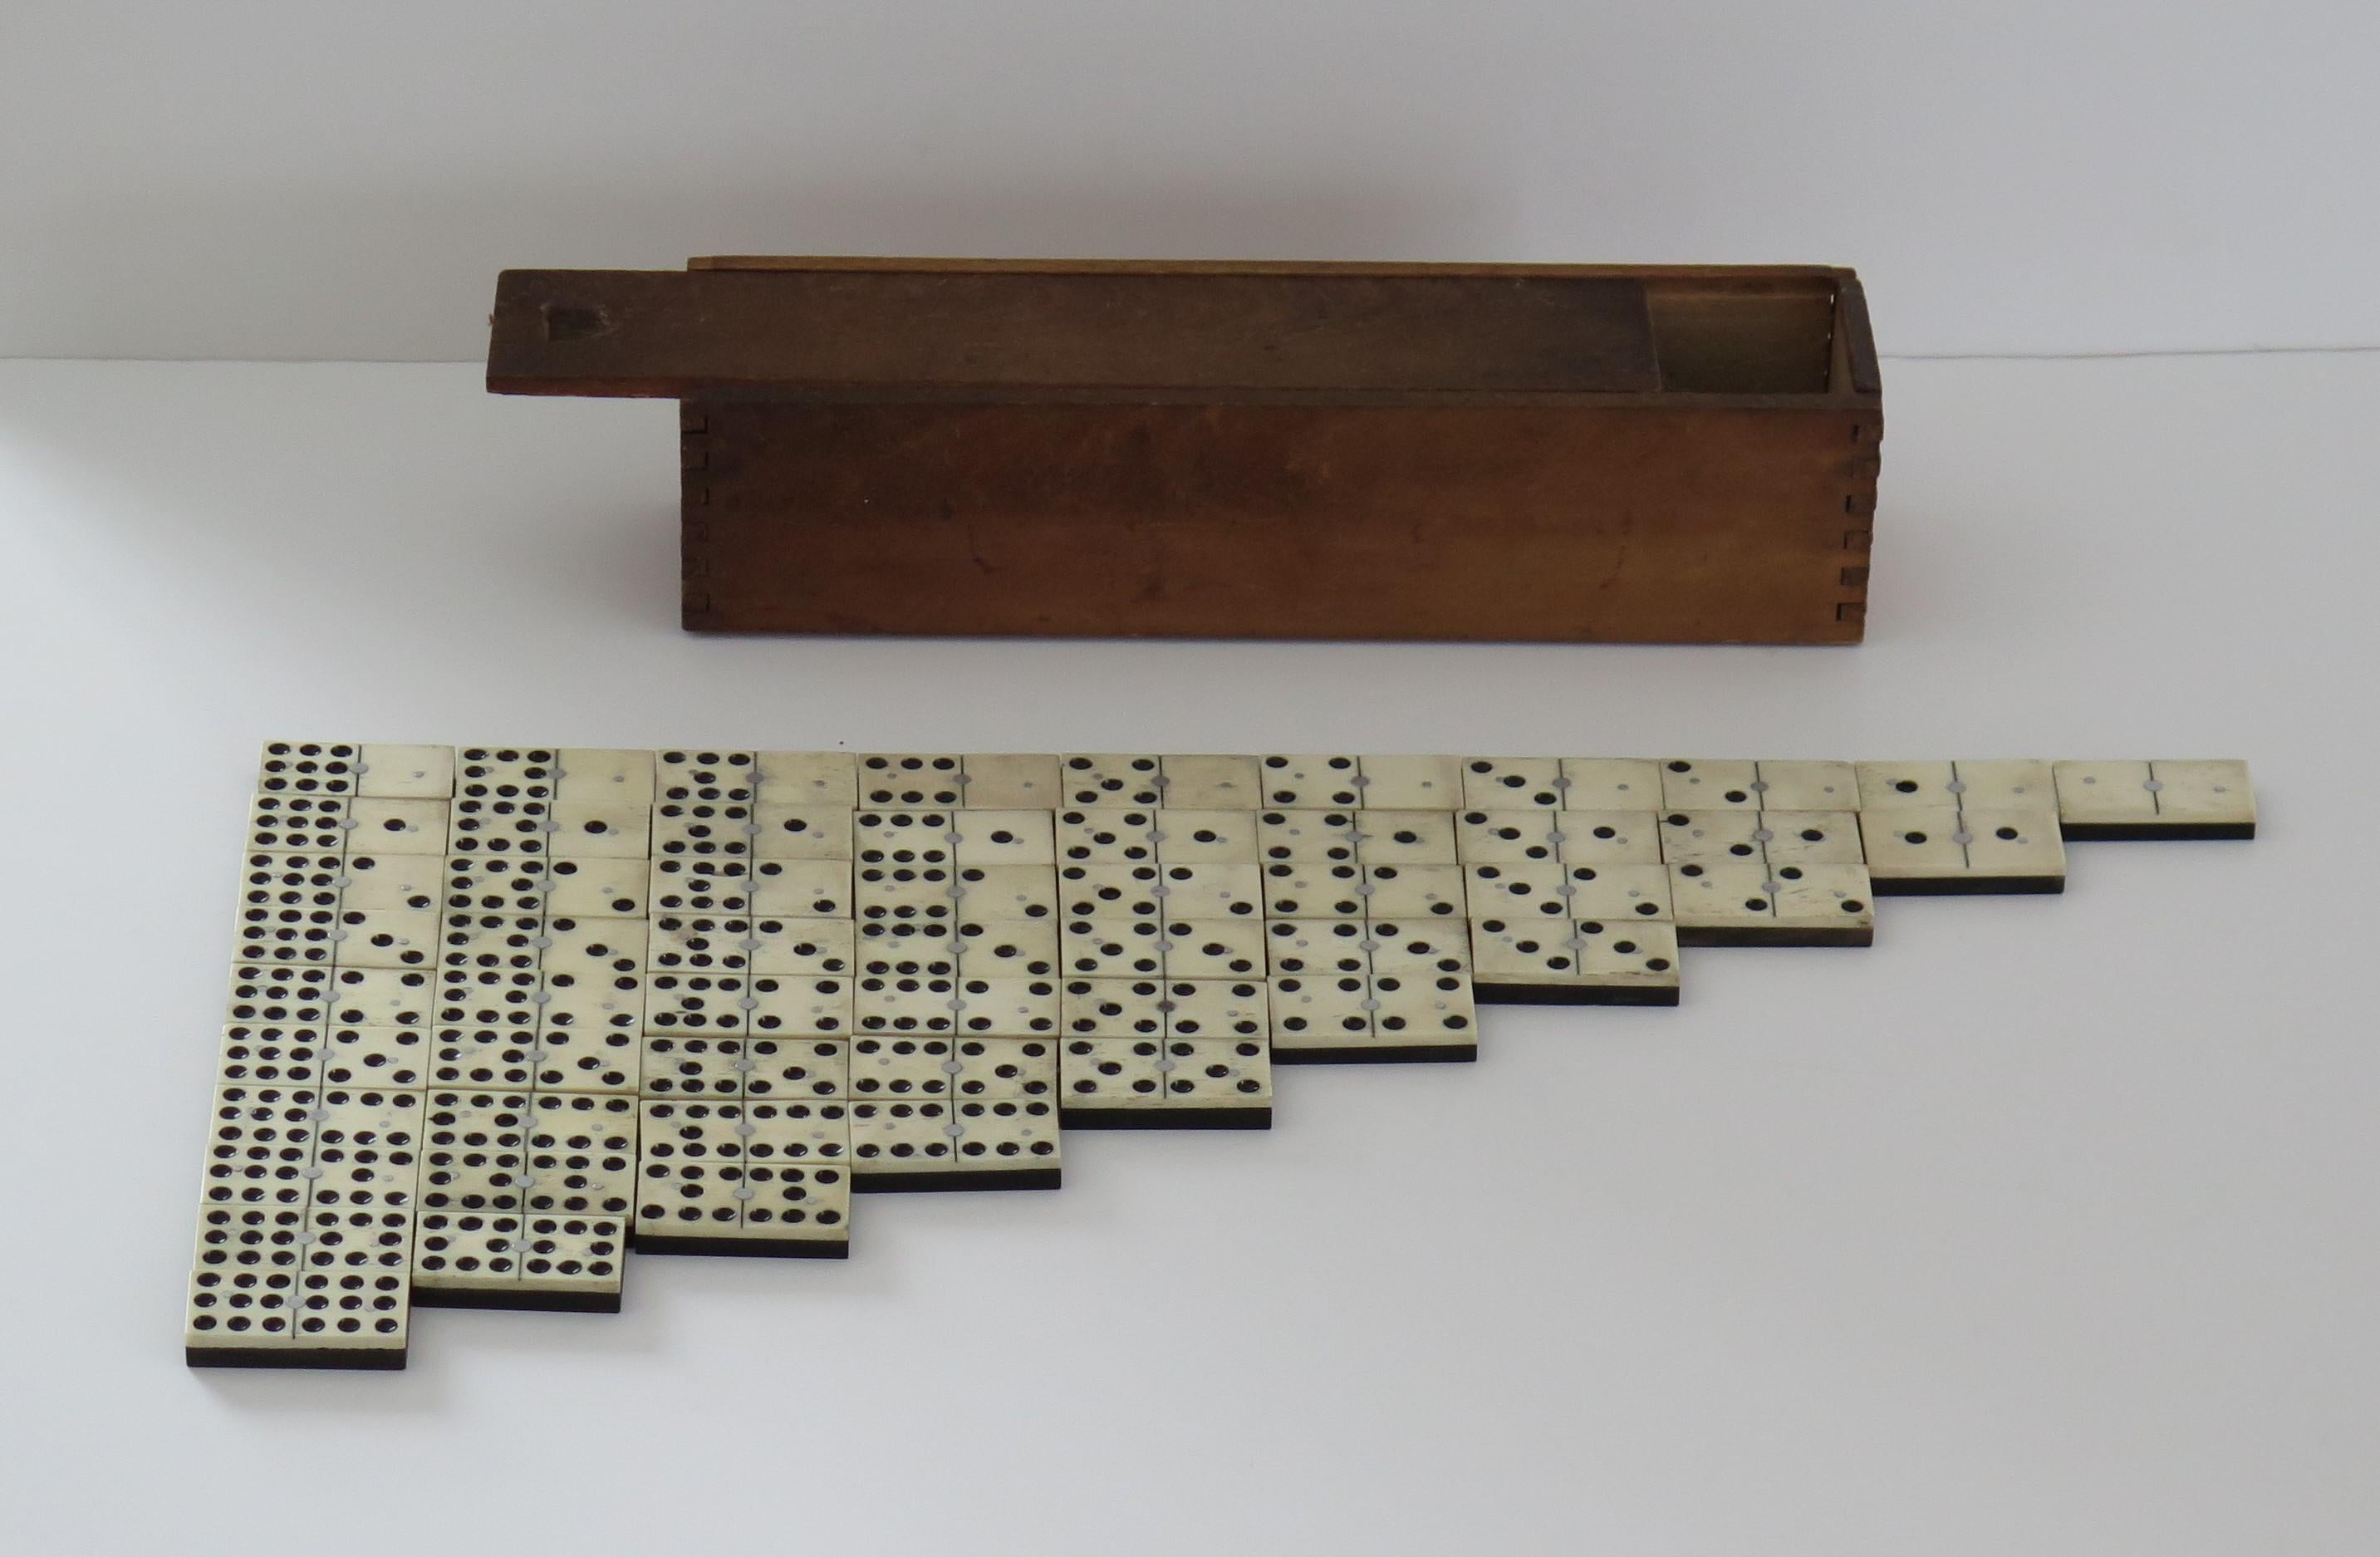 Dies ist eine seltene und originelle '9 Spot' Dominoe Spiel von 55 einzelnen Dominosteinen, die komplett mit seiner gegliederten Holzkiste oder Fall.

Domino-Sets bestehen in der Regel aus sechs Feldern, die insgesamt 28 Dominosteine ergeben.
Dieses